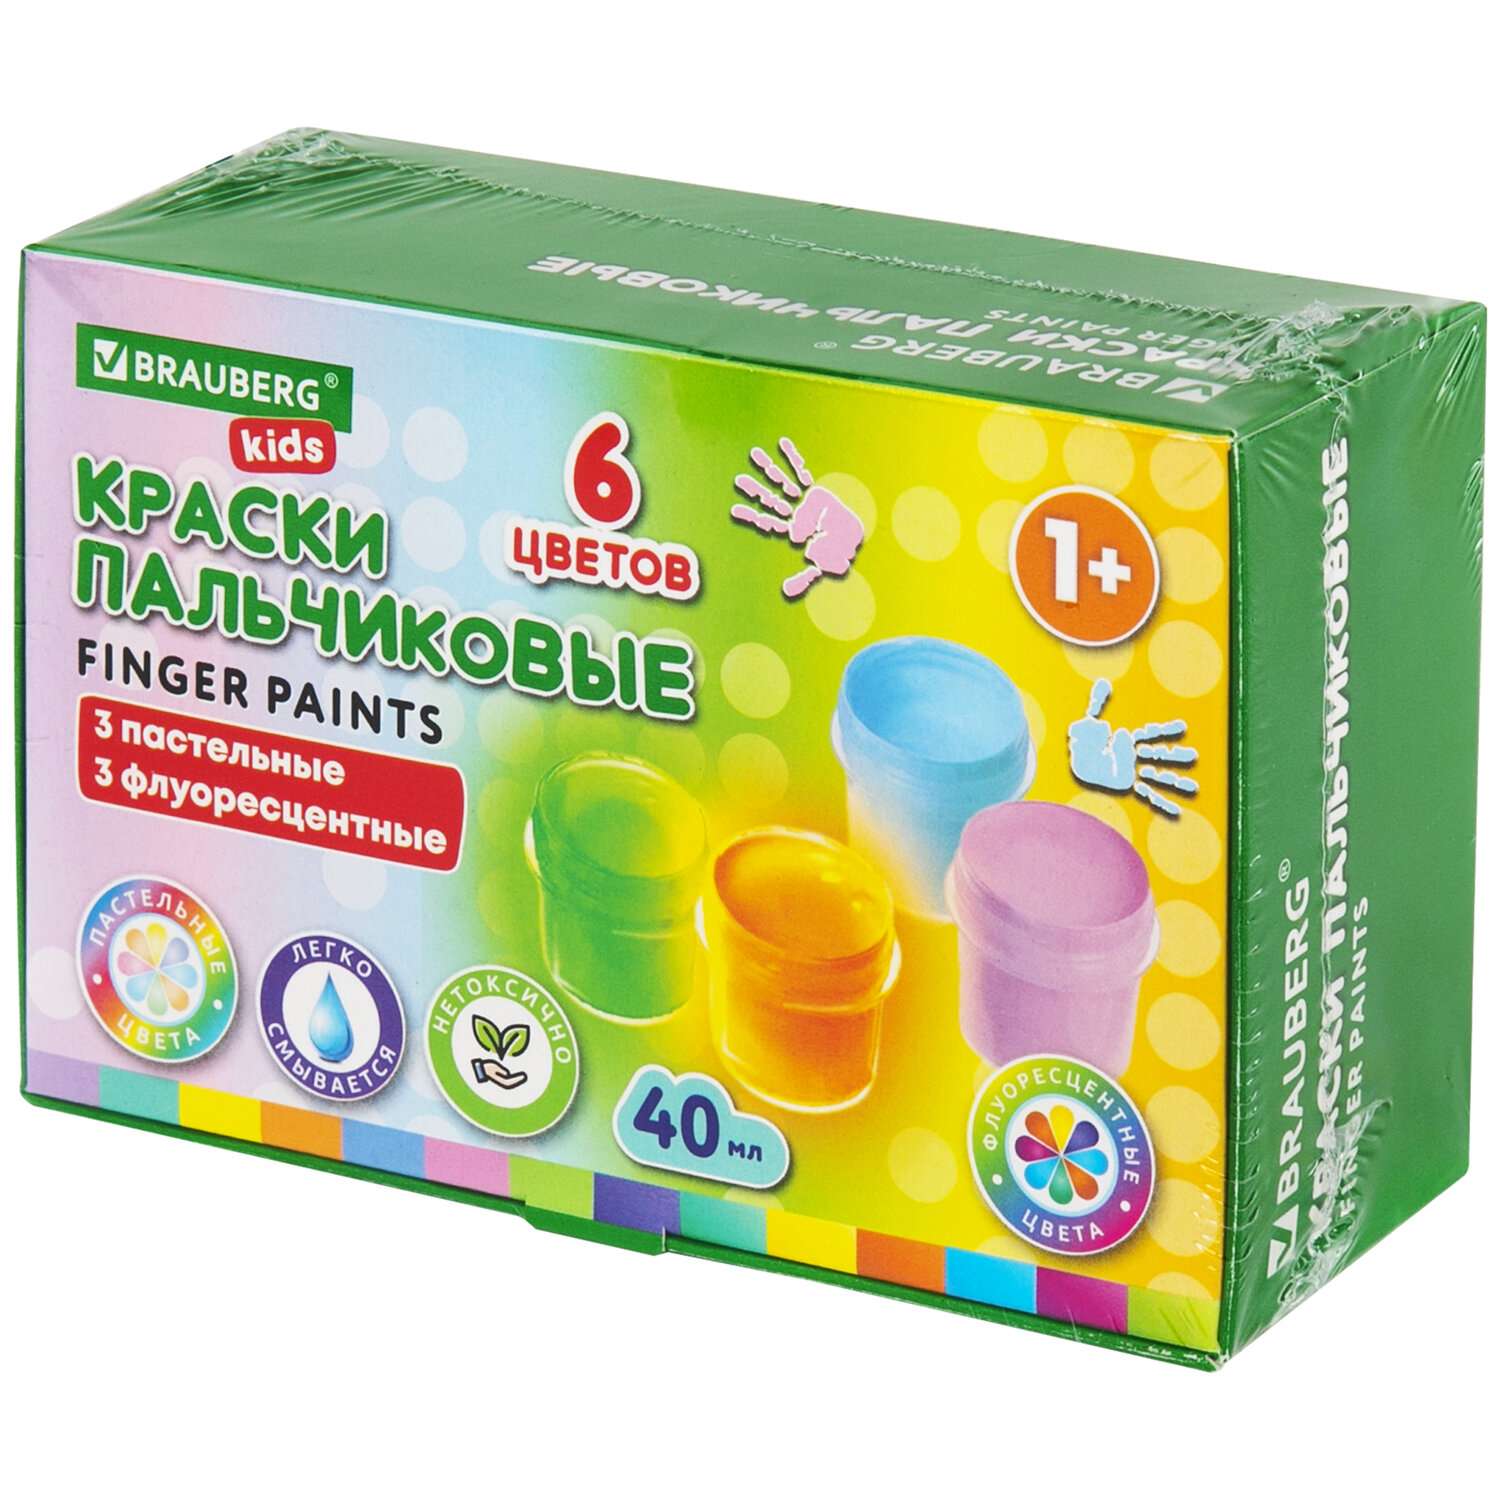 Краски пальчиковые Brauberg для малышей от 1 года 6 цветов пастельные и флуоресцентные - фото 1